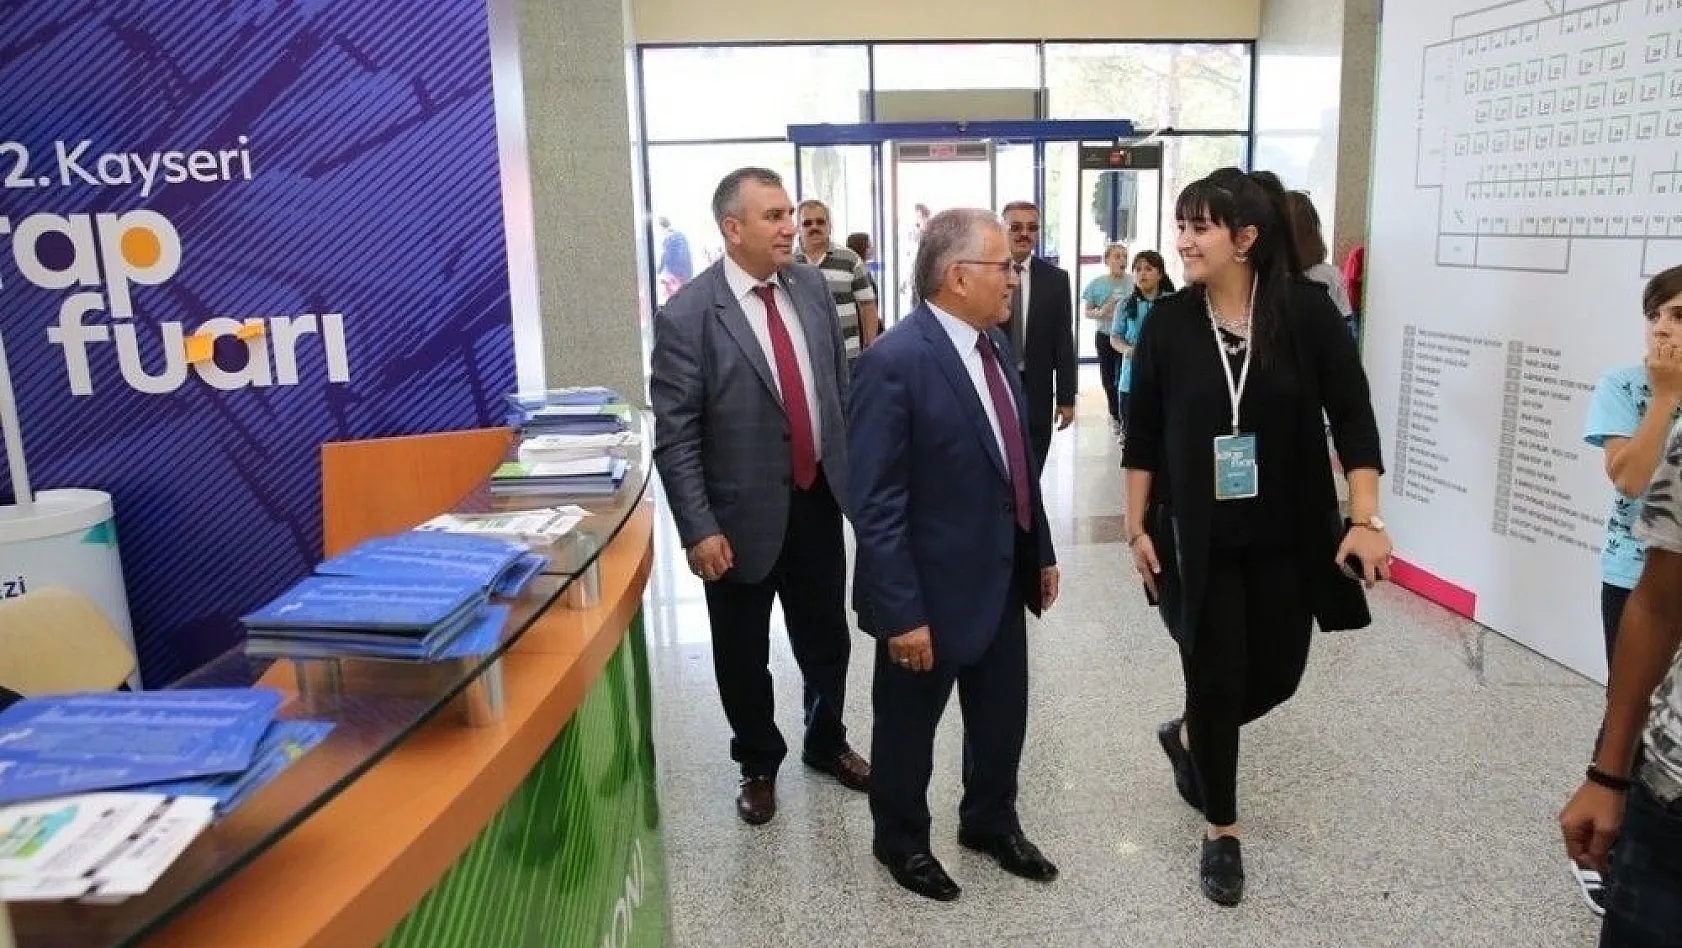 Başkan Büyükkılıç: 'Kitap Fuarı Kayseri'nin kültür ve sanat merkezi olduğunun göstergesidir'
